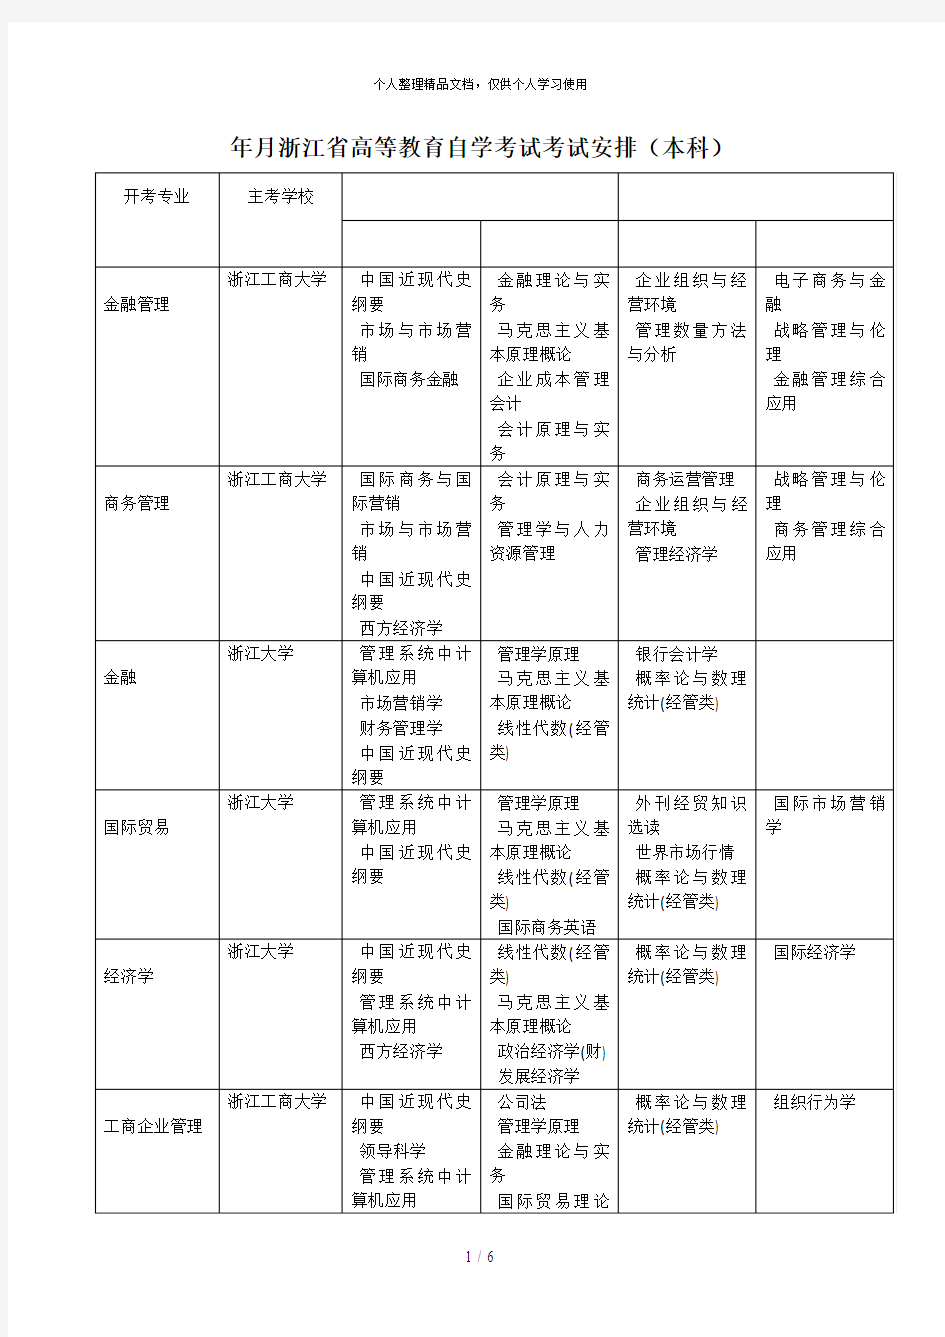 2019年4月浙江省高等教育自学考试考试安排(本科)